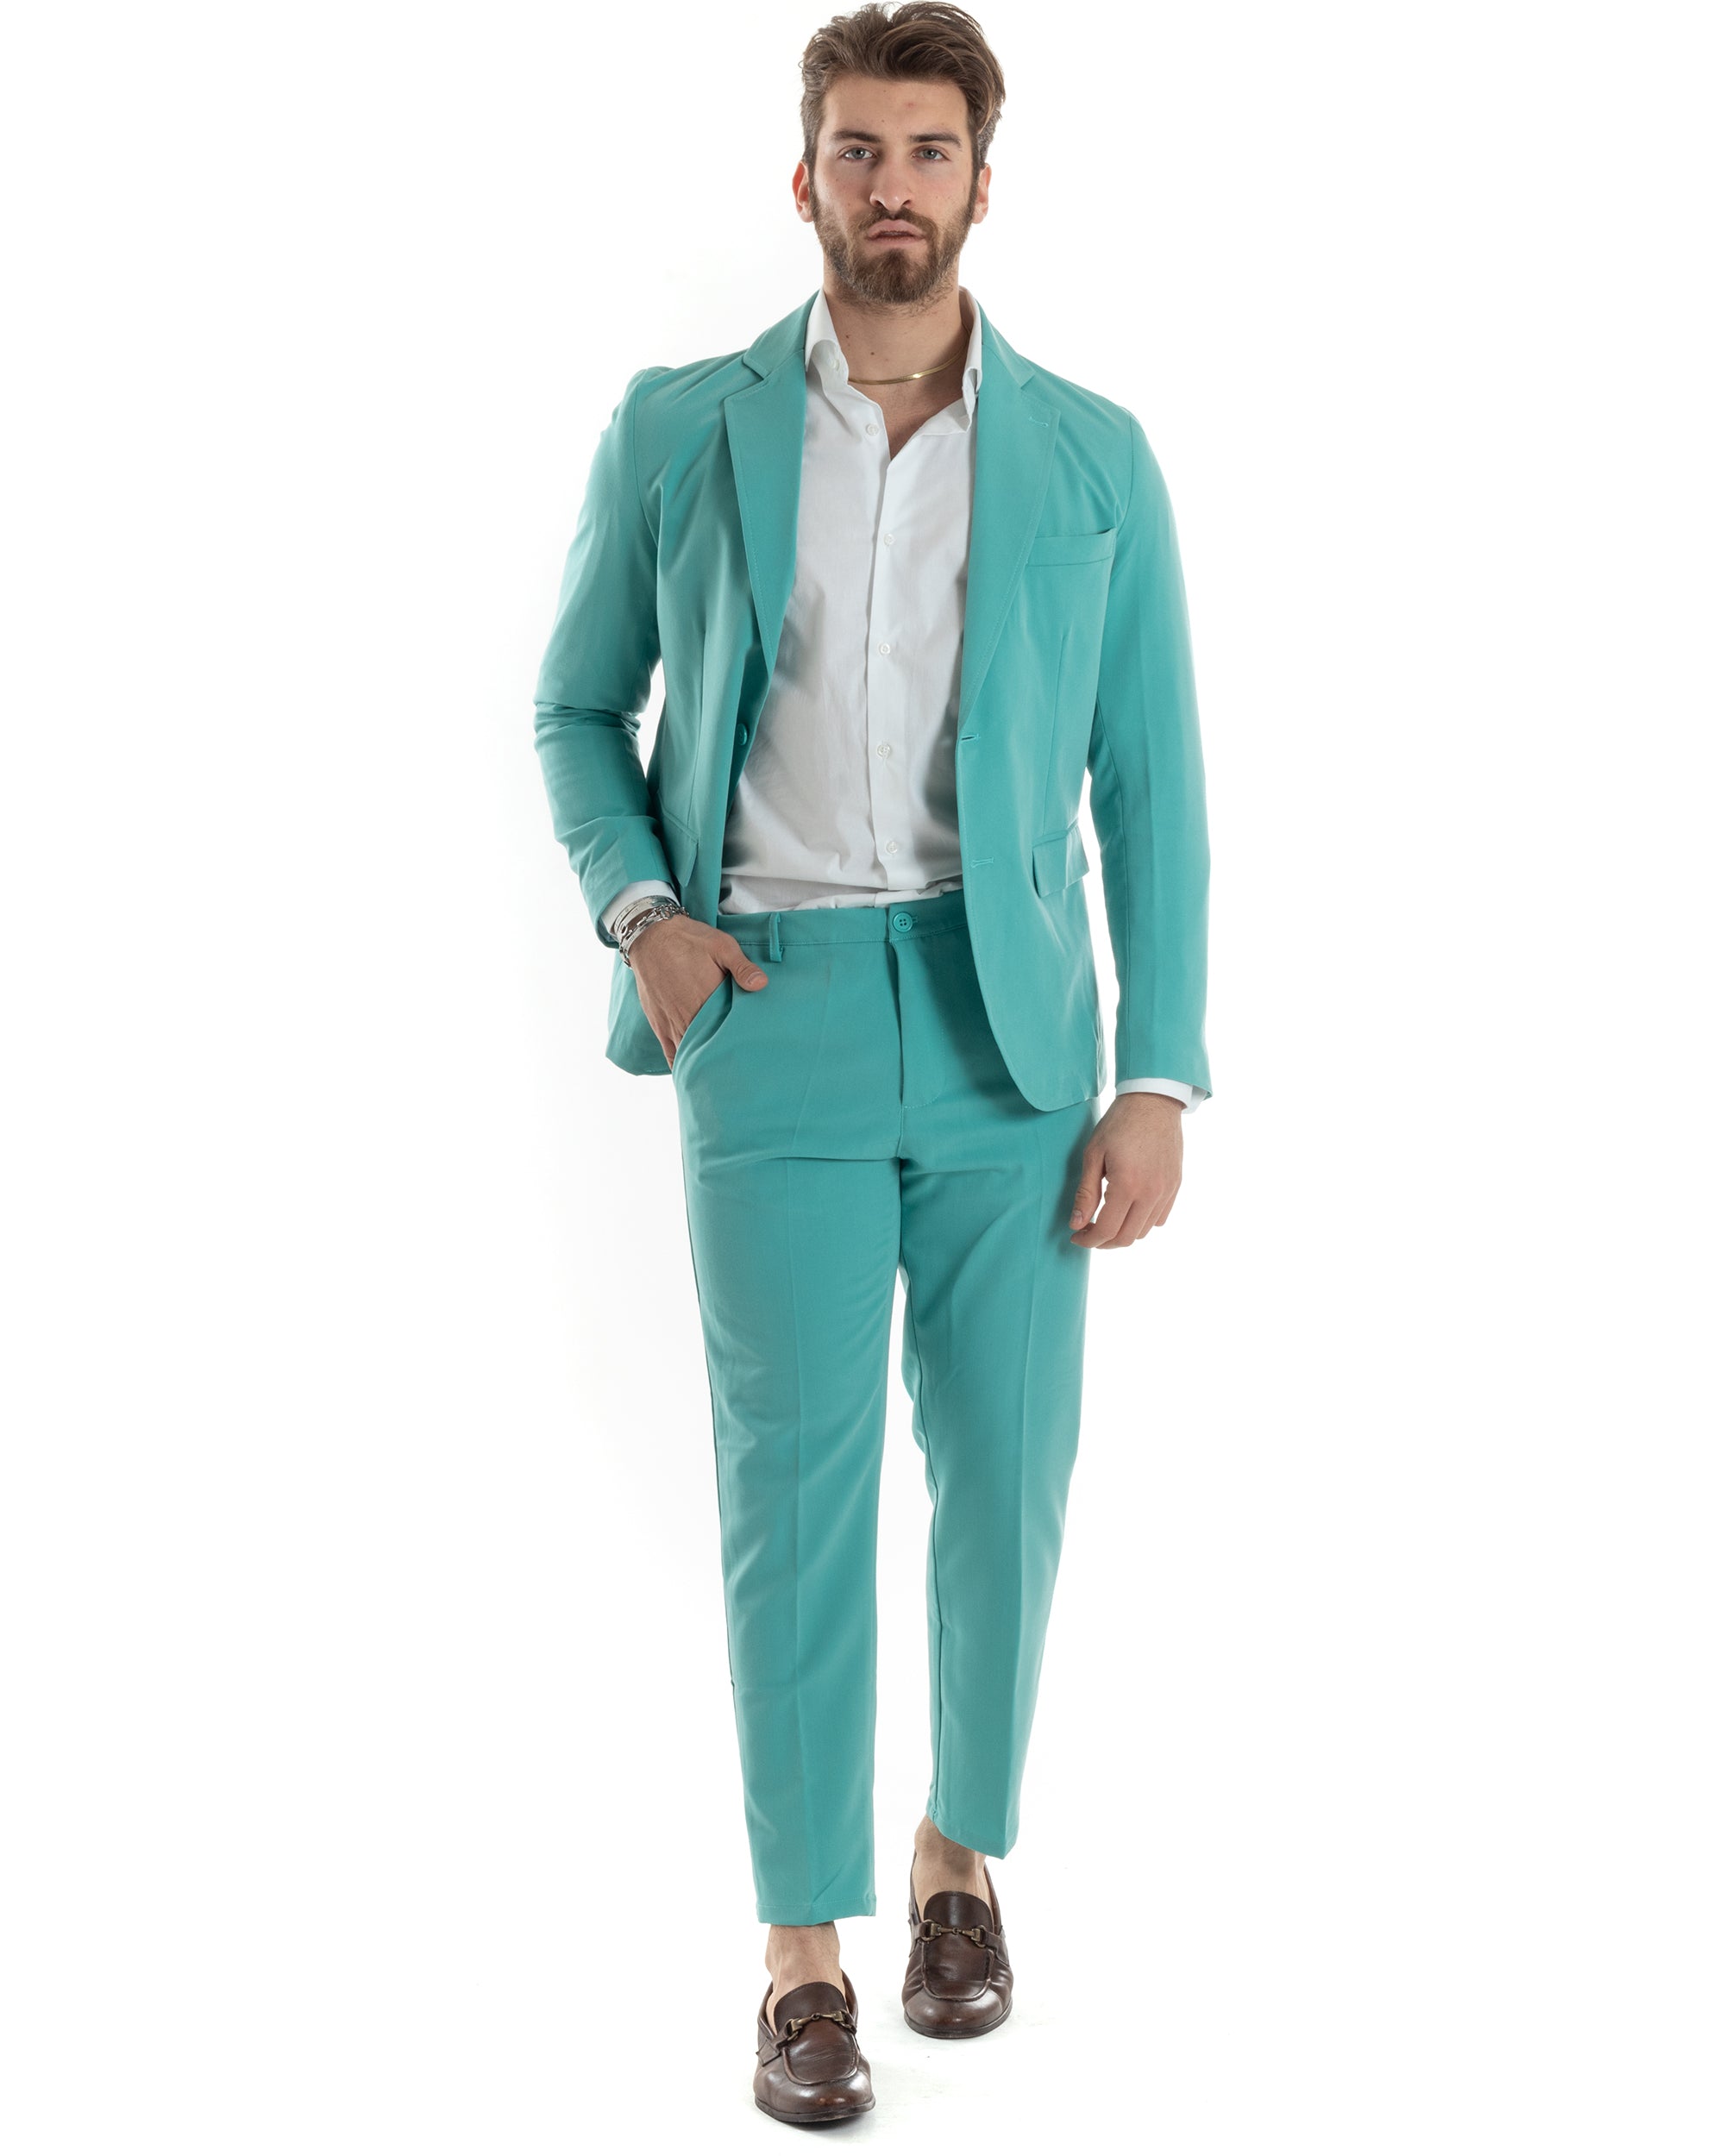 Abito Uomo Monopetto Vestito Completo Giacca Pantaloni Verde Acqua Tinta Unita Elegante Casual GIOSAL-AE1034A